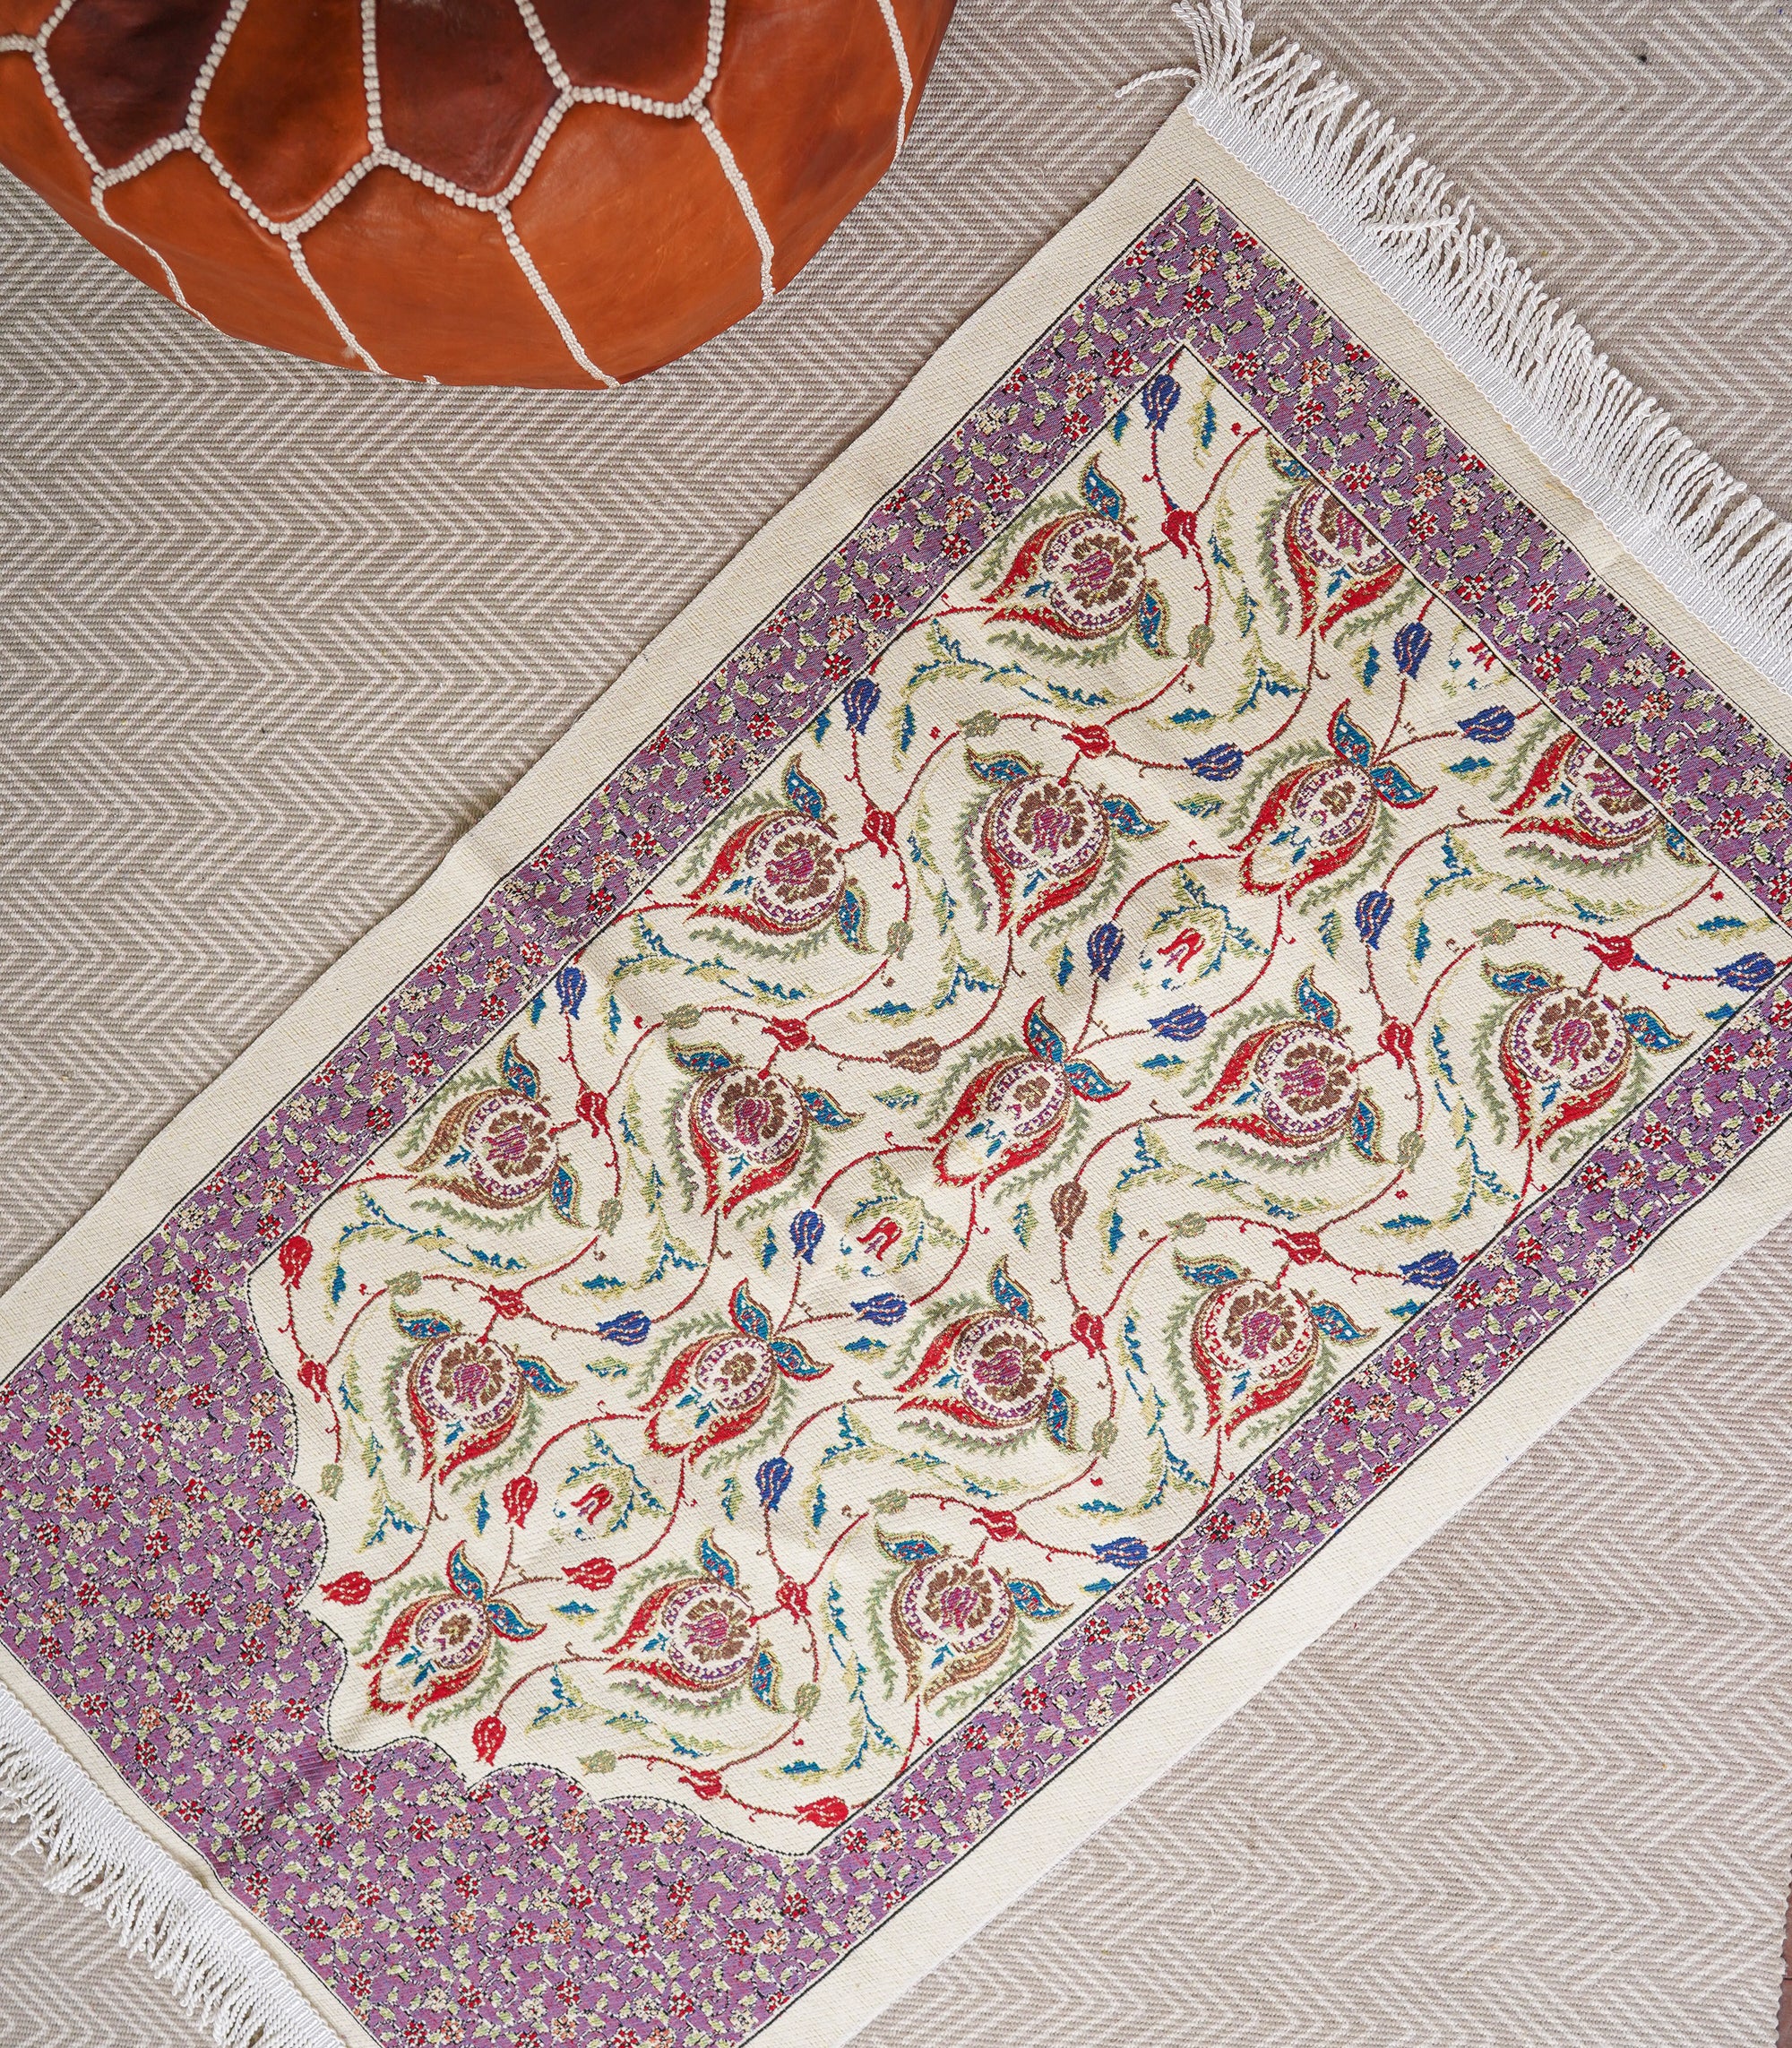 Turkish Kilim Carpets - Medium